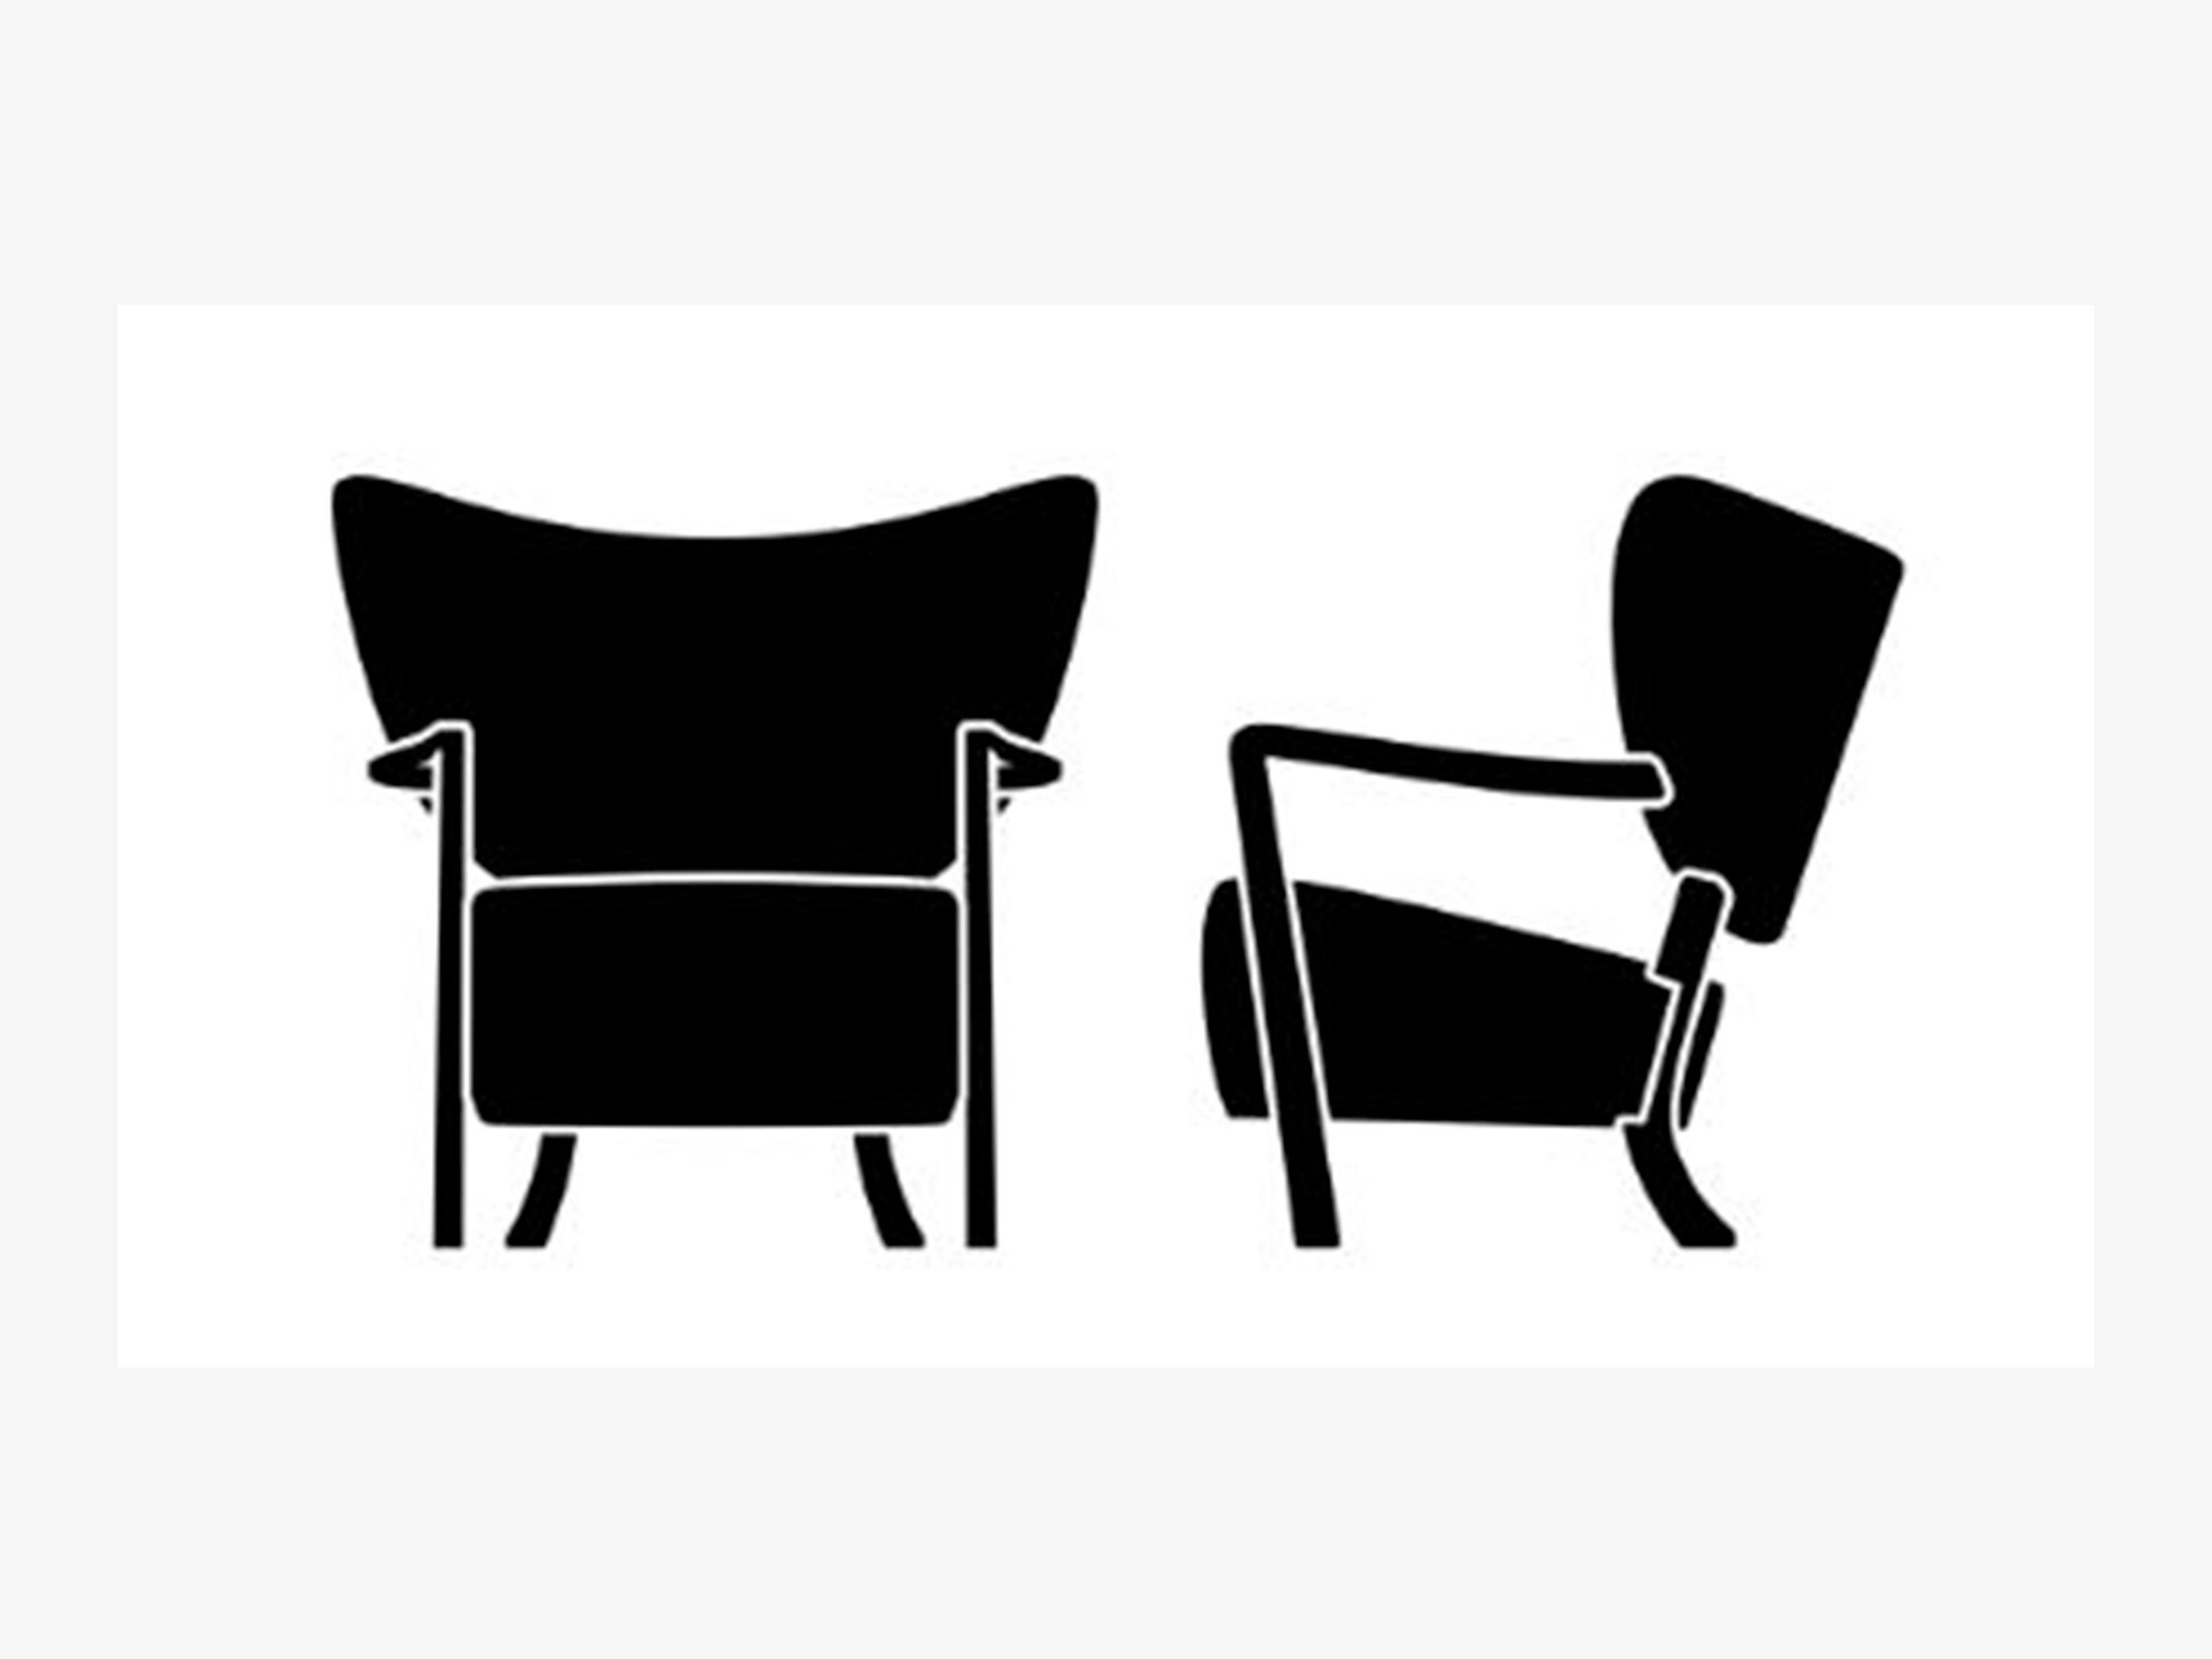 Der Wulff-Sessel wurde in der ersten Hälfte des 20. Jahrhunderts in einer dänischen Traditionswerkstatt vom Tischler Jørgen Wolff hergestellt und ist ein eindrucksvolles Beispiel für die Designbewegung Danish Modern